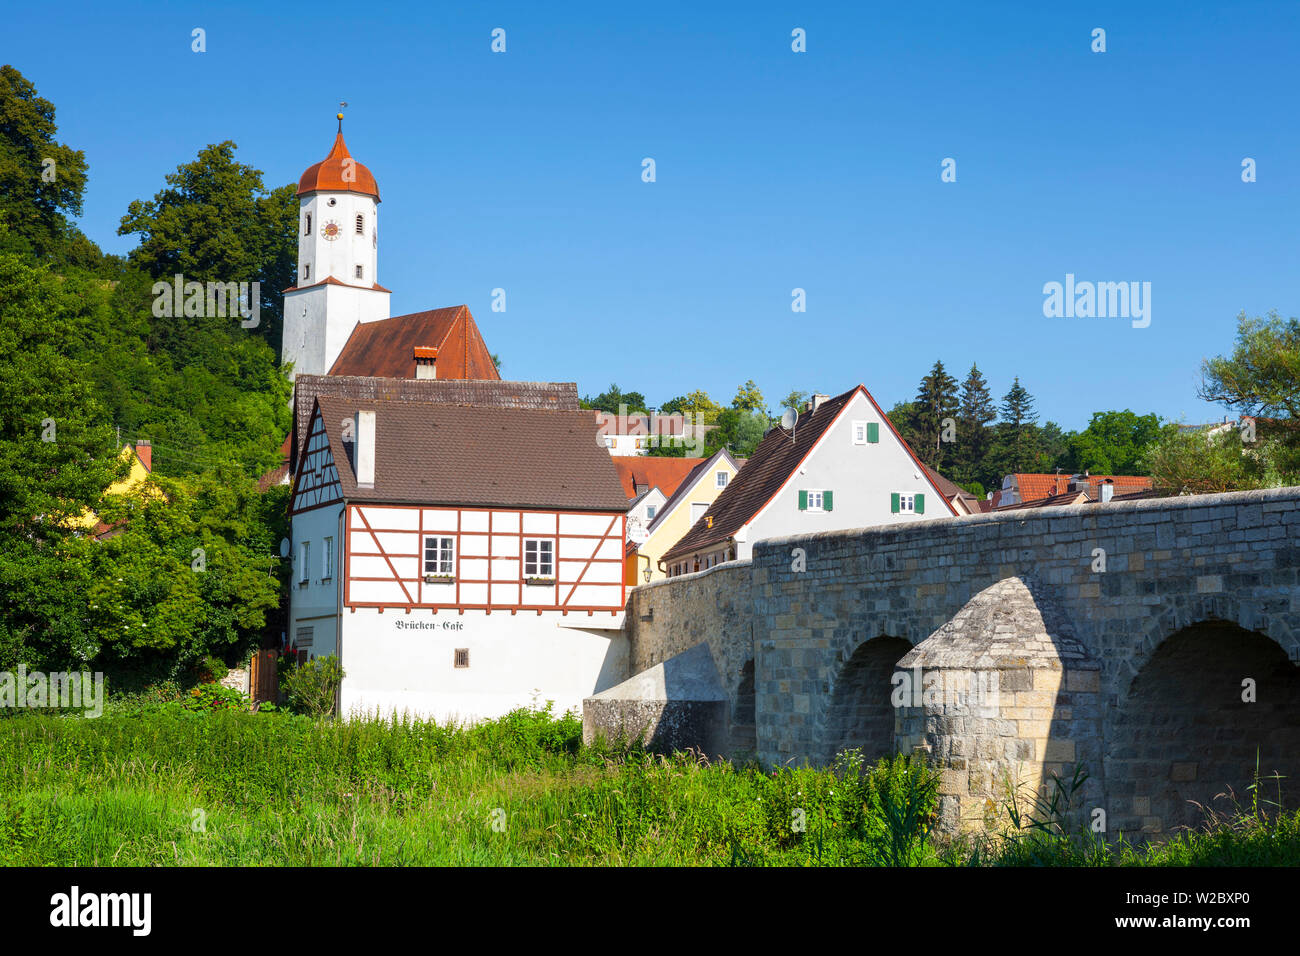 Harburg von der malerischen Altstadt steinerne Brücke, Harburg, Bayern, Deutschland Stockfoto